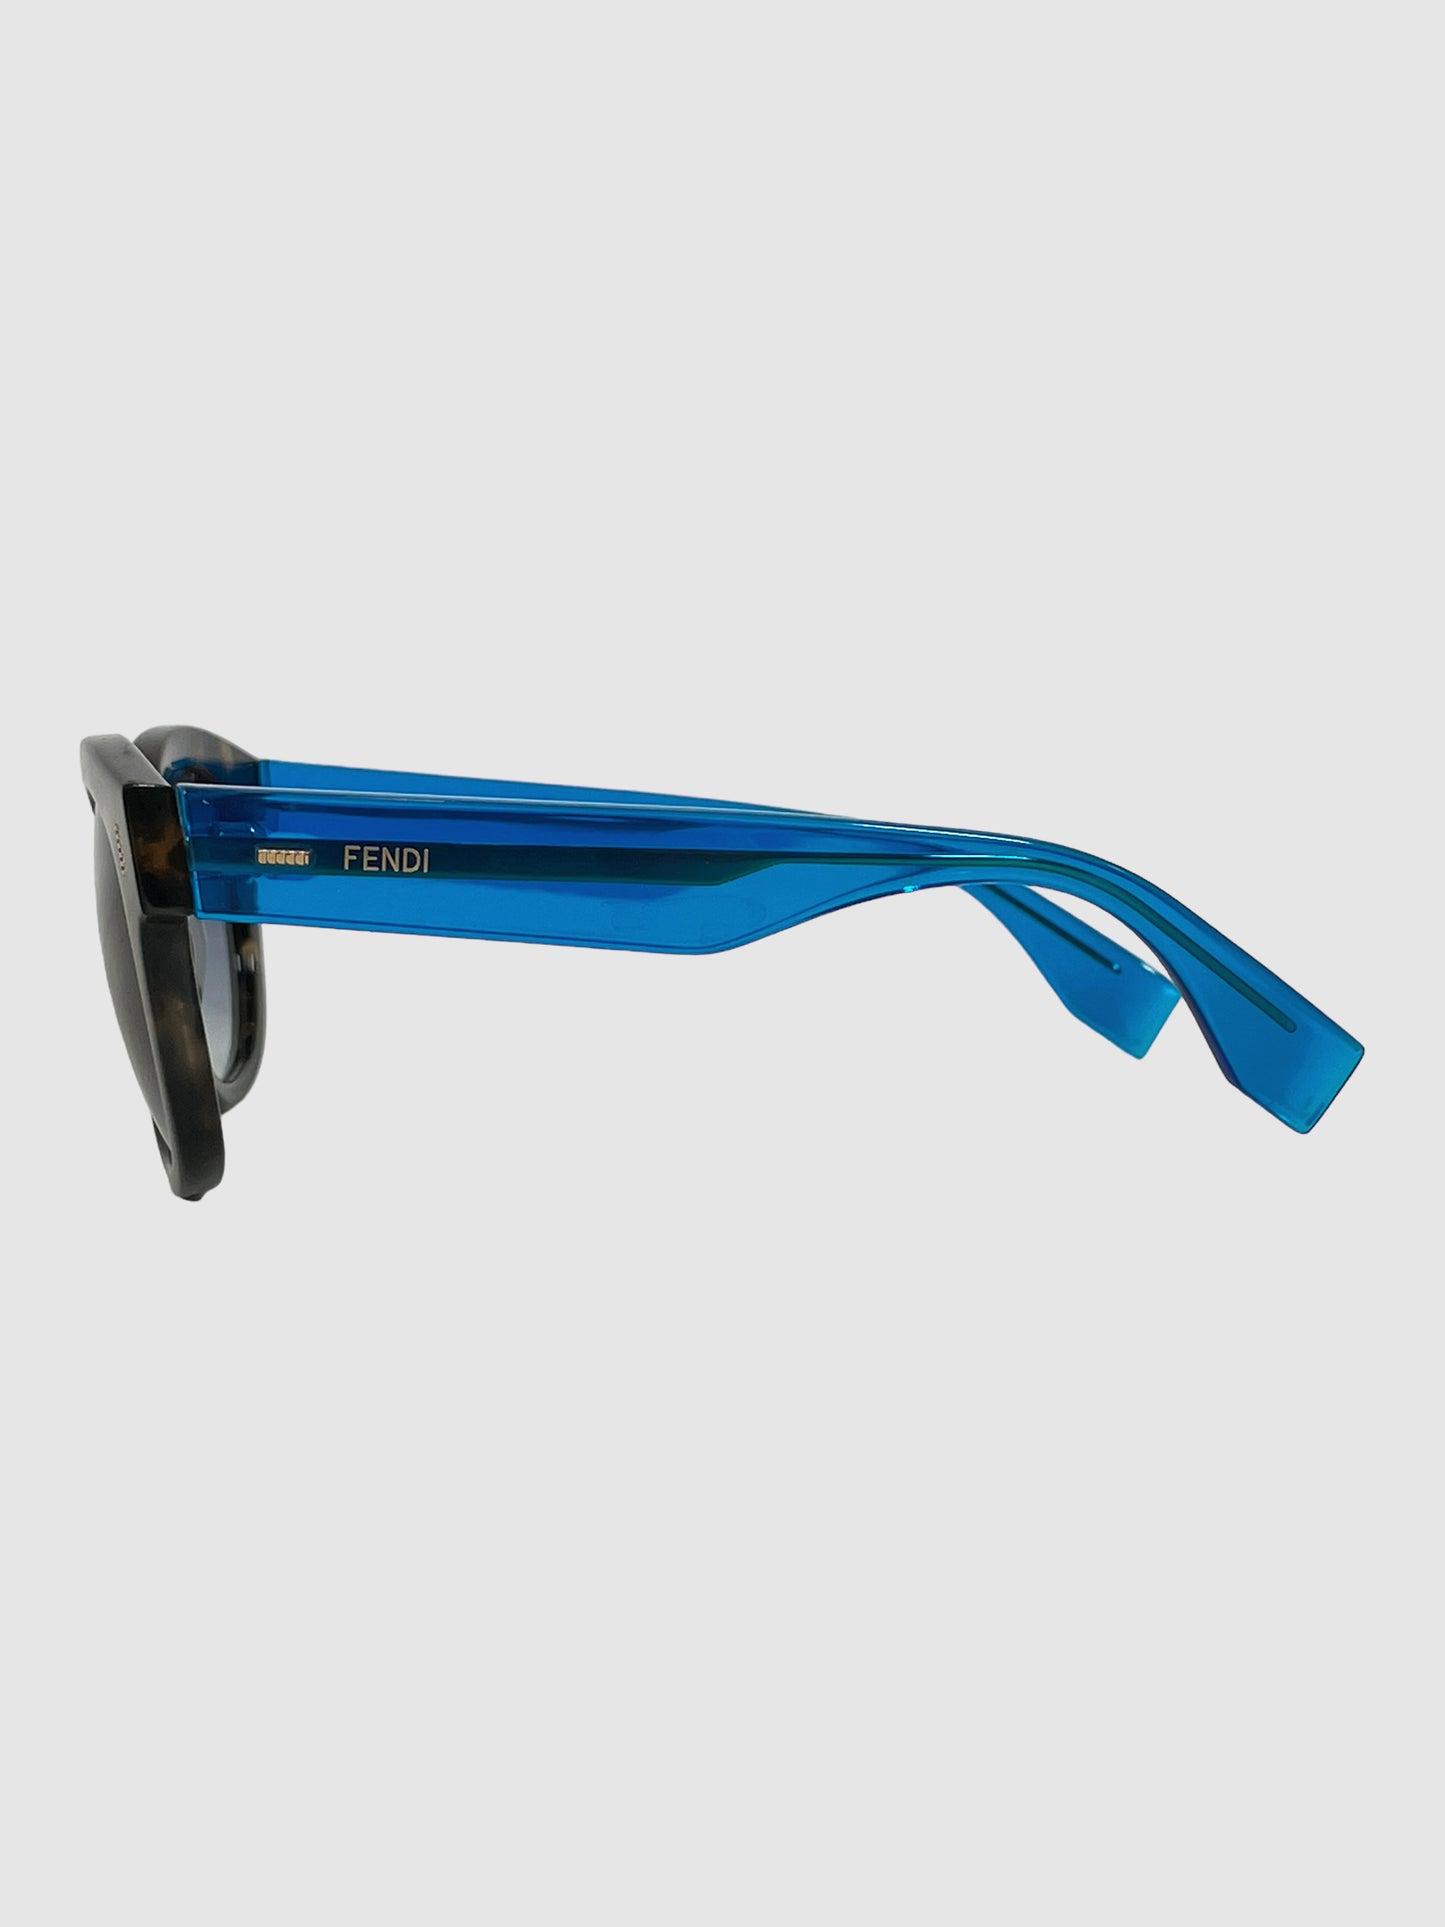 Fendi Tortoiseshell Sunglasses